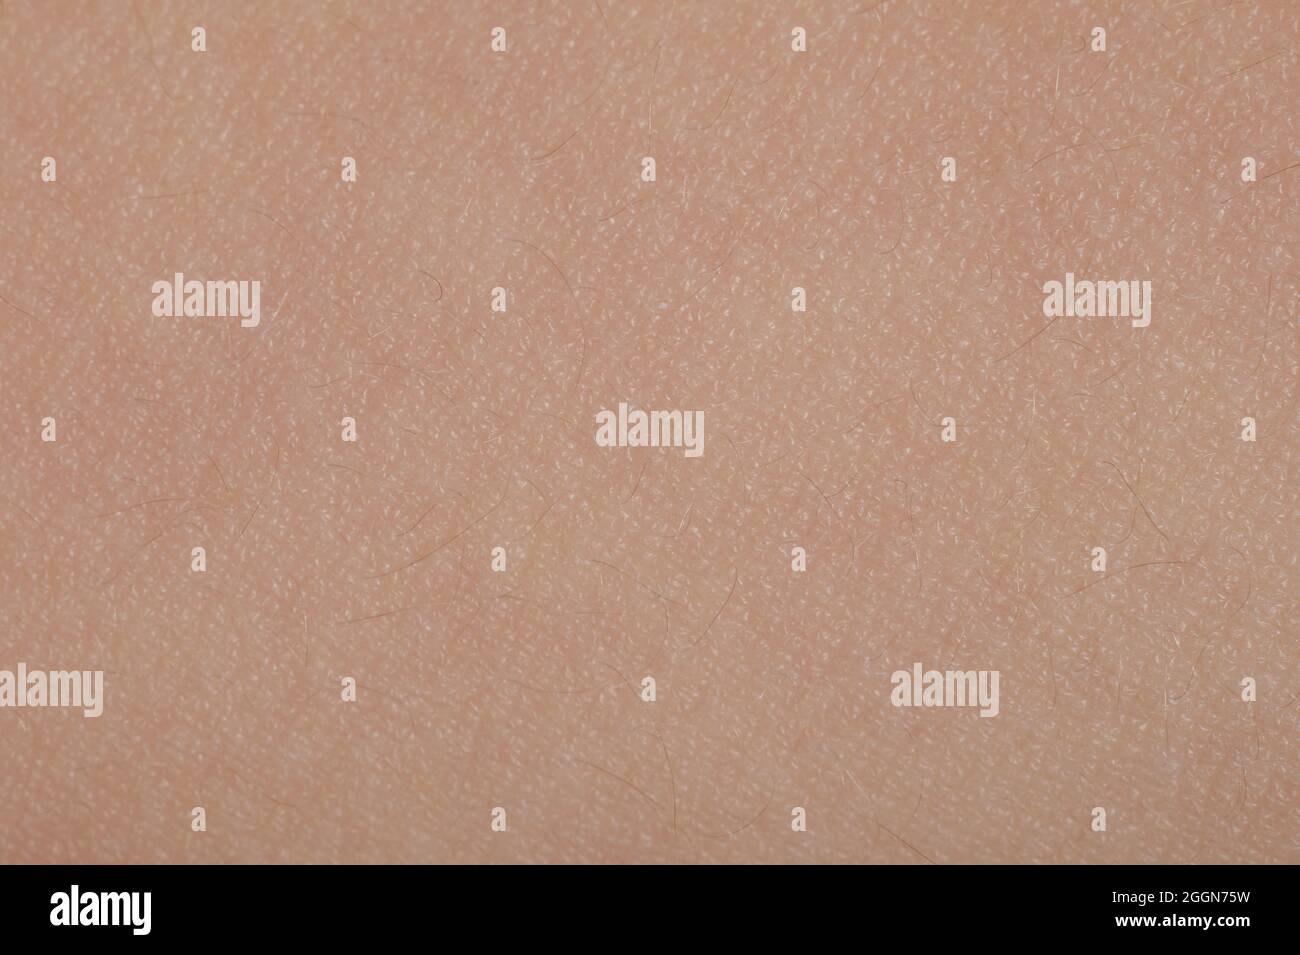 Vista de primer plano de la macro de patrón de piel humana en color beige Foto de stock